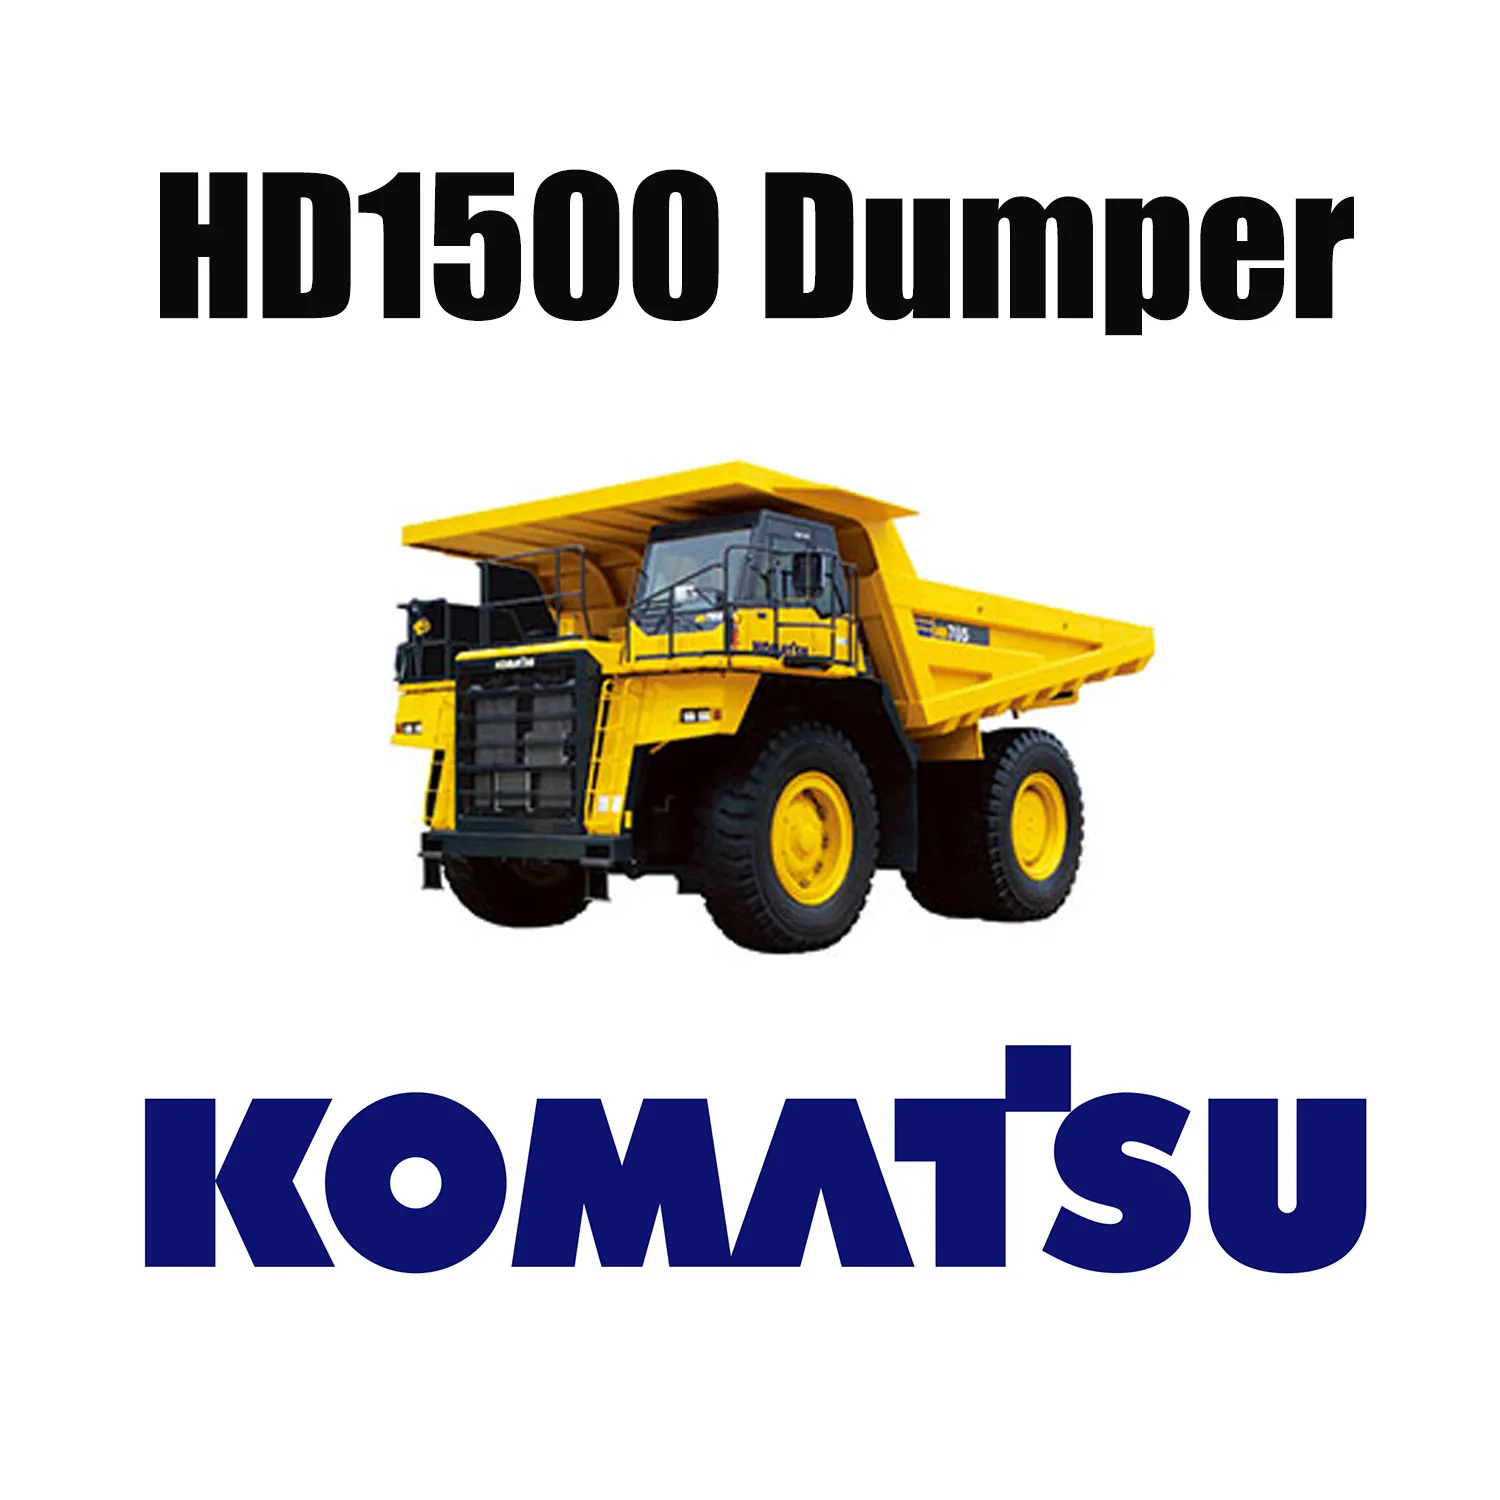 Camion meccanico KOMATSU HD1500 compatibile con pneumatici EarthMover speciali 33.00R51